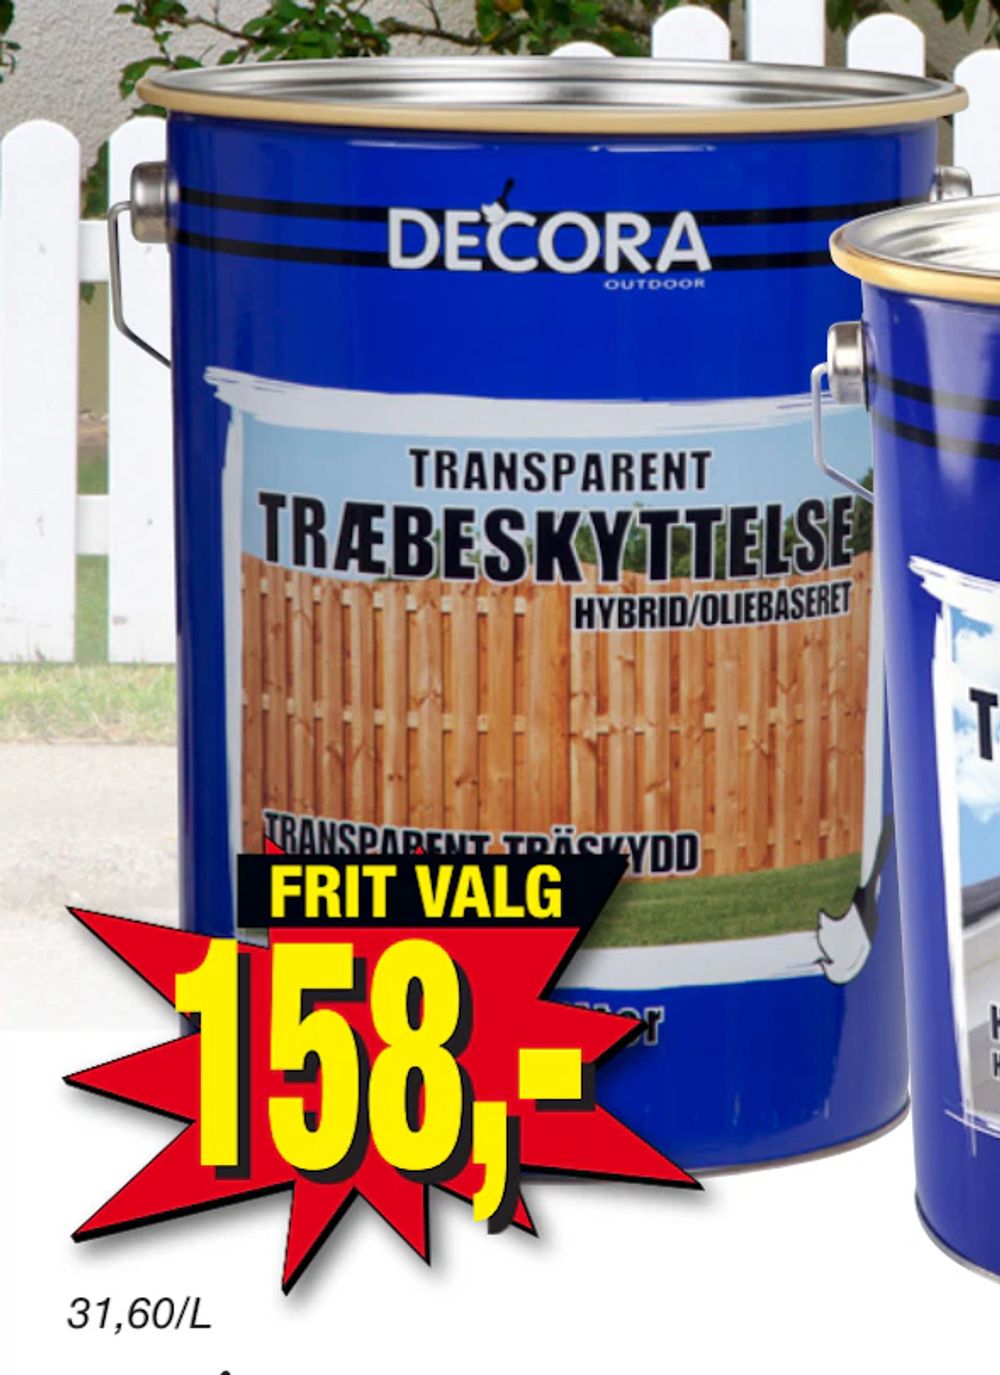 Tilbud på Træbeskyttelse 5 L fra Harald Nyborg til 158 kr.